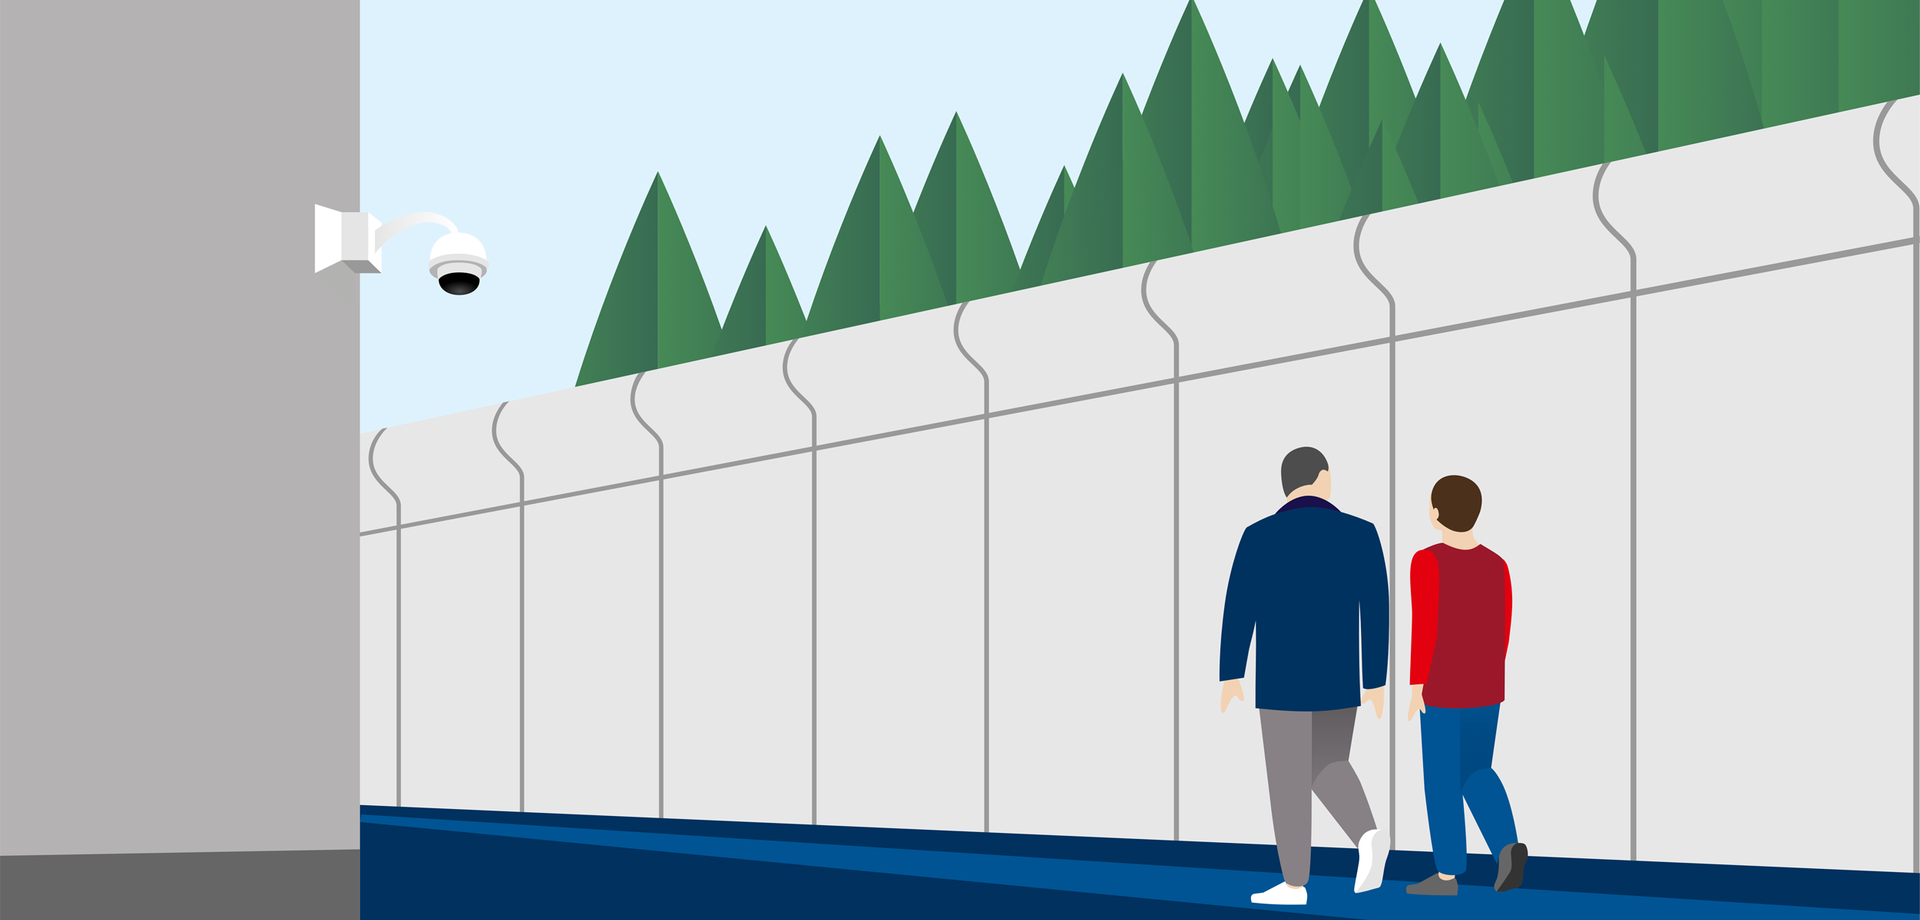 Eine Illustration zeigt zwei Männer, die an einer Mauer entlang gehen. Im Vordergrund ist eine Kamera an einer Hauswand zu sehen.